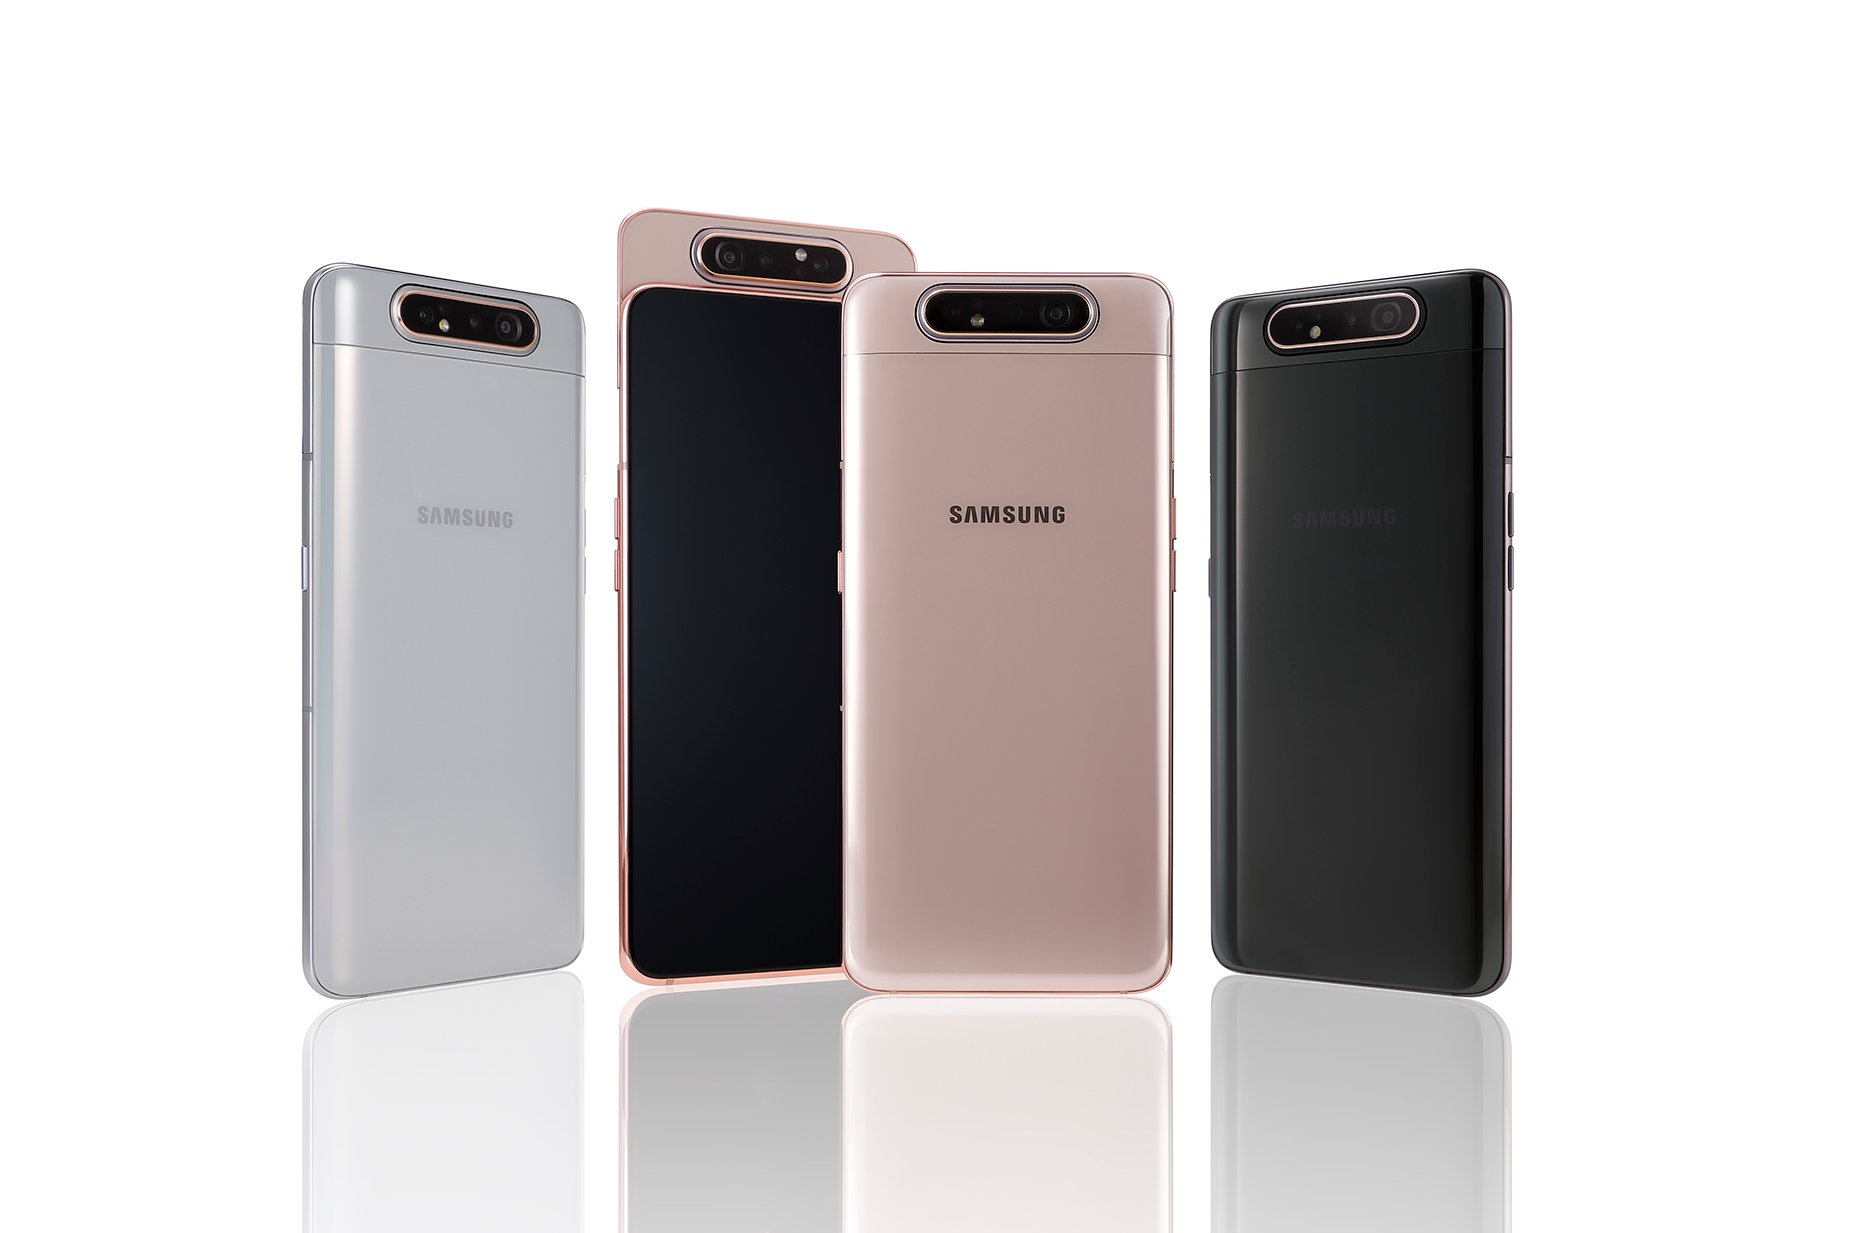 Samsung Galaxy A80 8 128gb